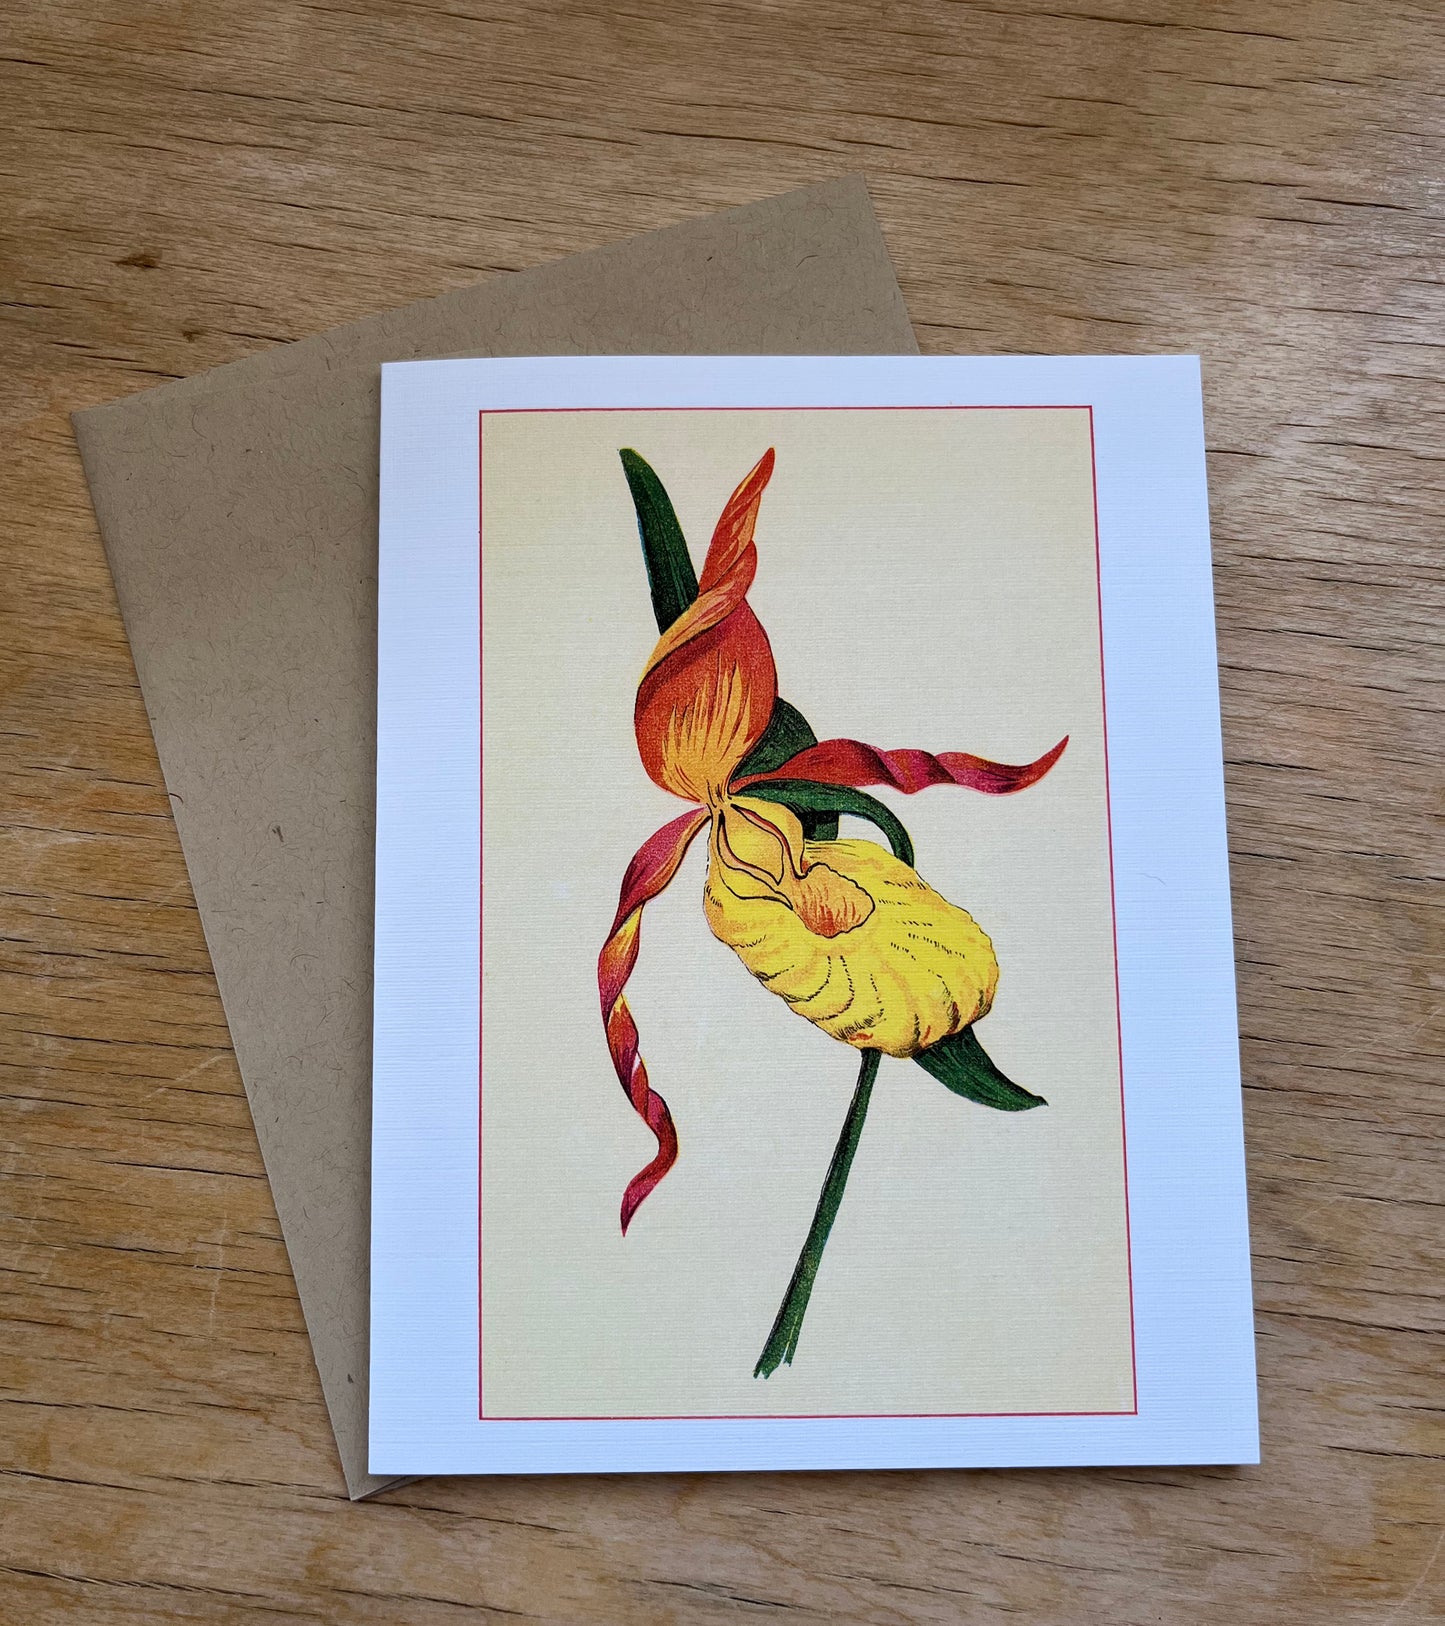 Wild flowers of America - greeting card 4 pack (red varieties)